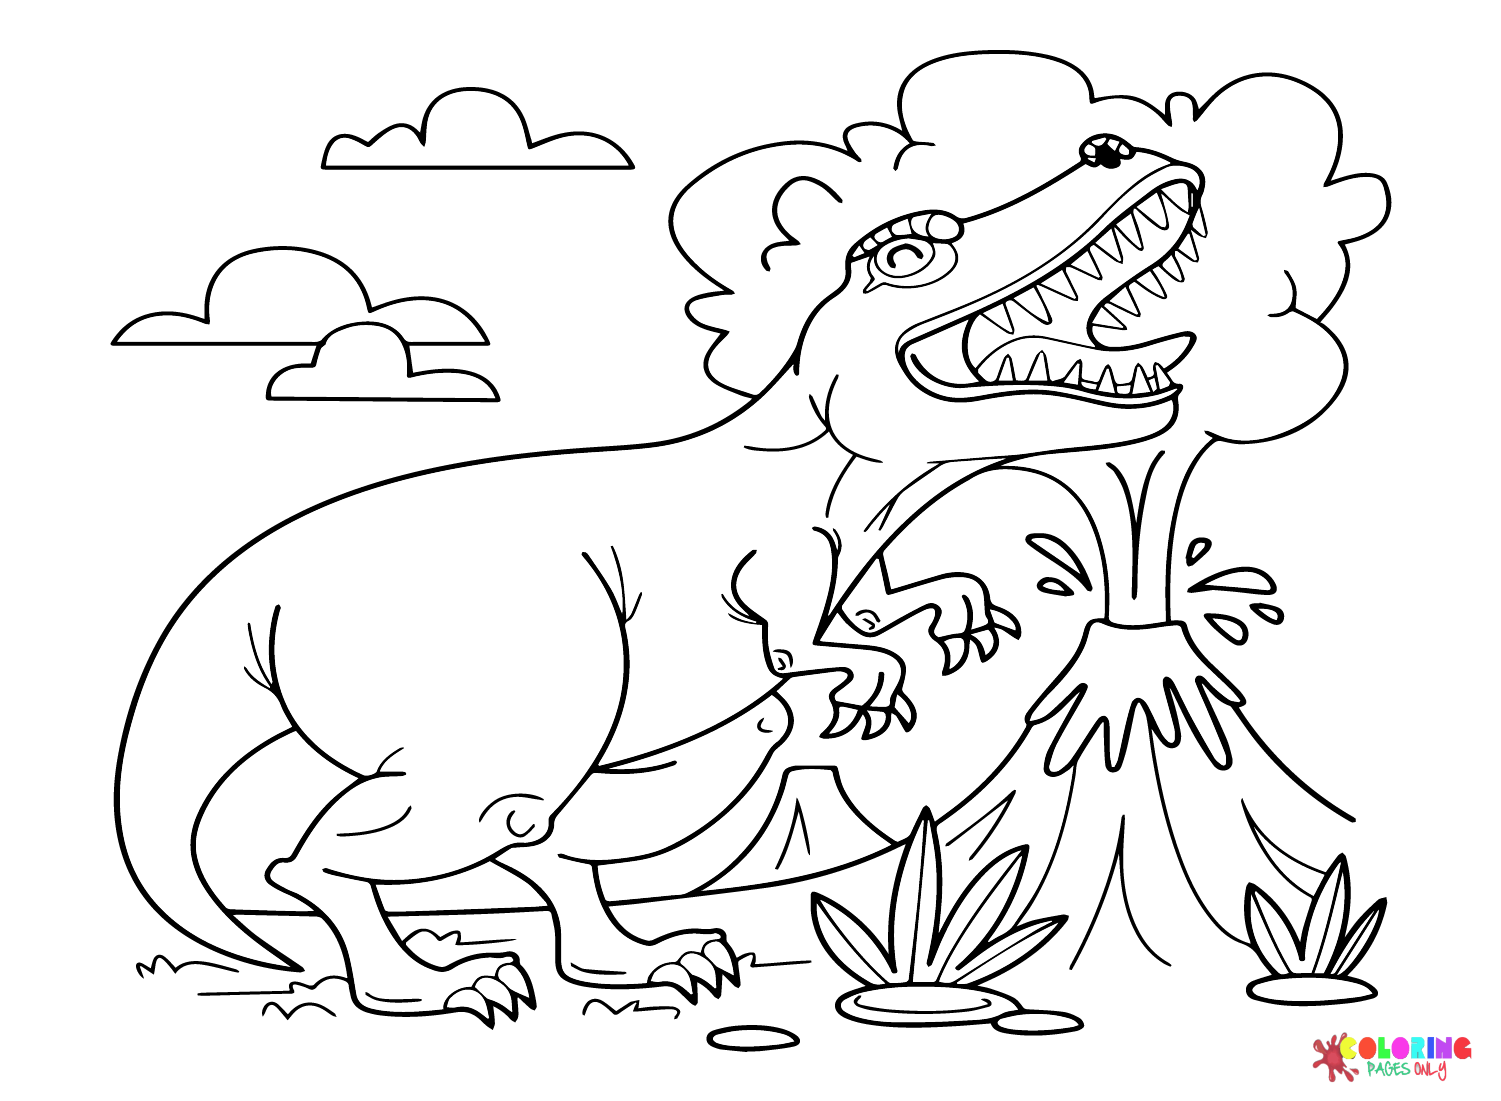 Ausmalbilder Dinosaurier Vorgeschichte